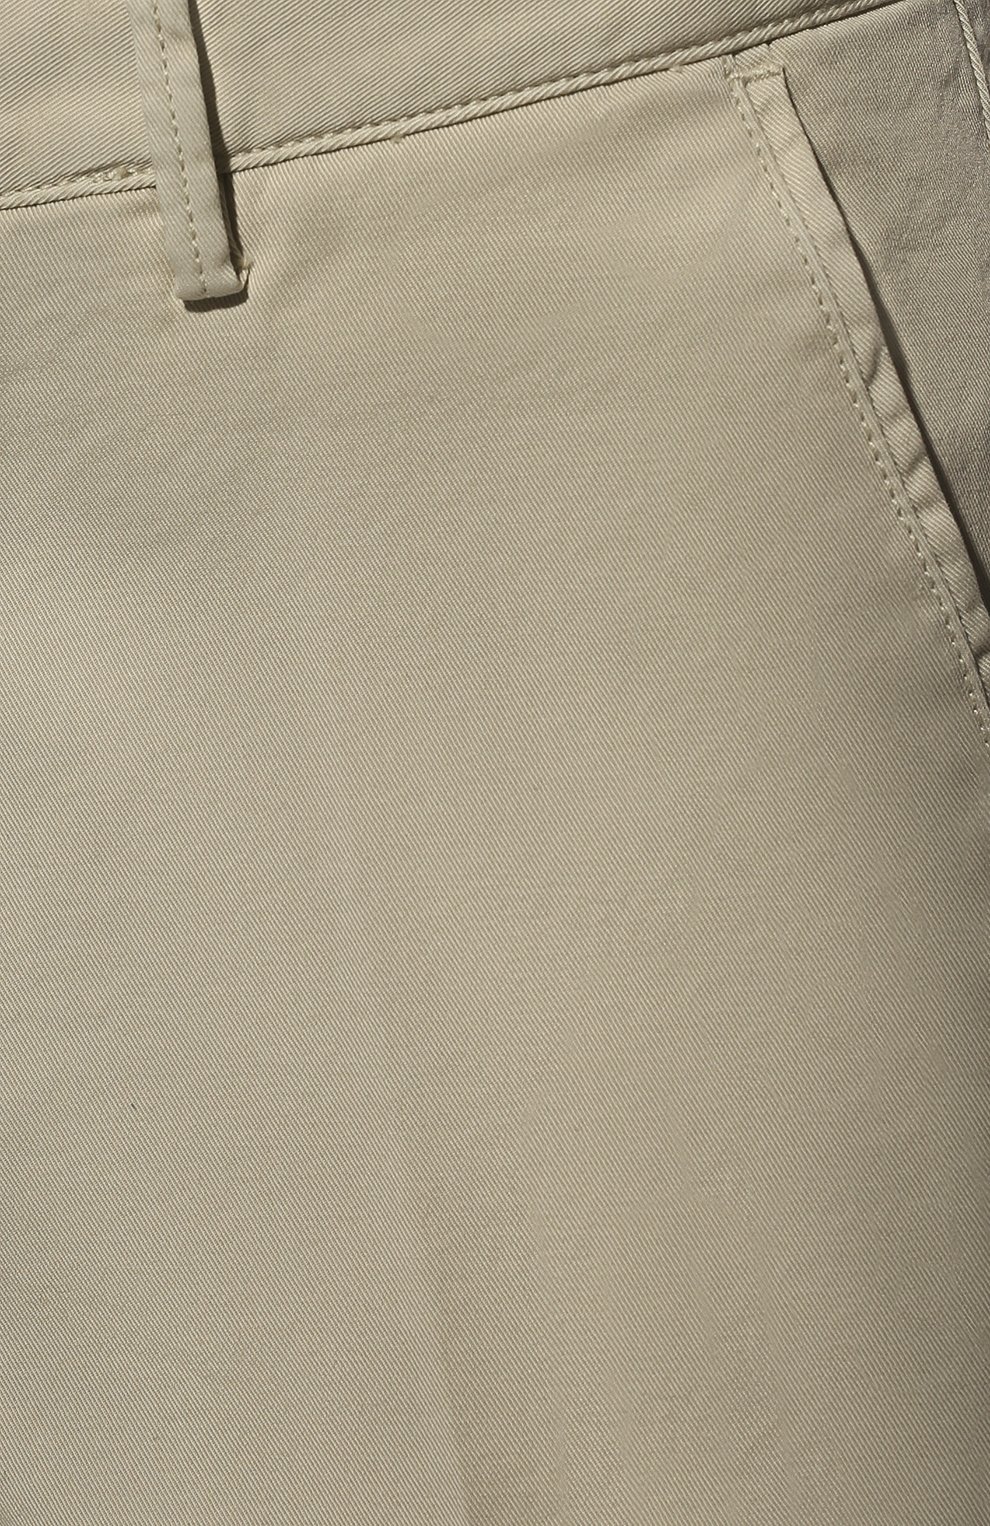 Мужские хлопковые шорты BOSS бежевого цвета, арт. 50406679 | Фото 5 (Длина Шорты М: До колена; Принт: Без принта; Материал внешний: Хлопок; Случай: Формальный; Стили: Кэжуэл)